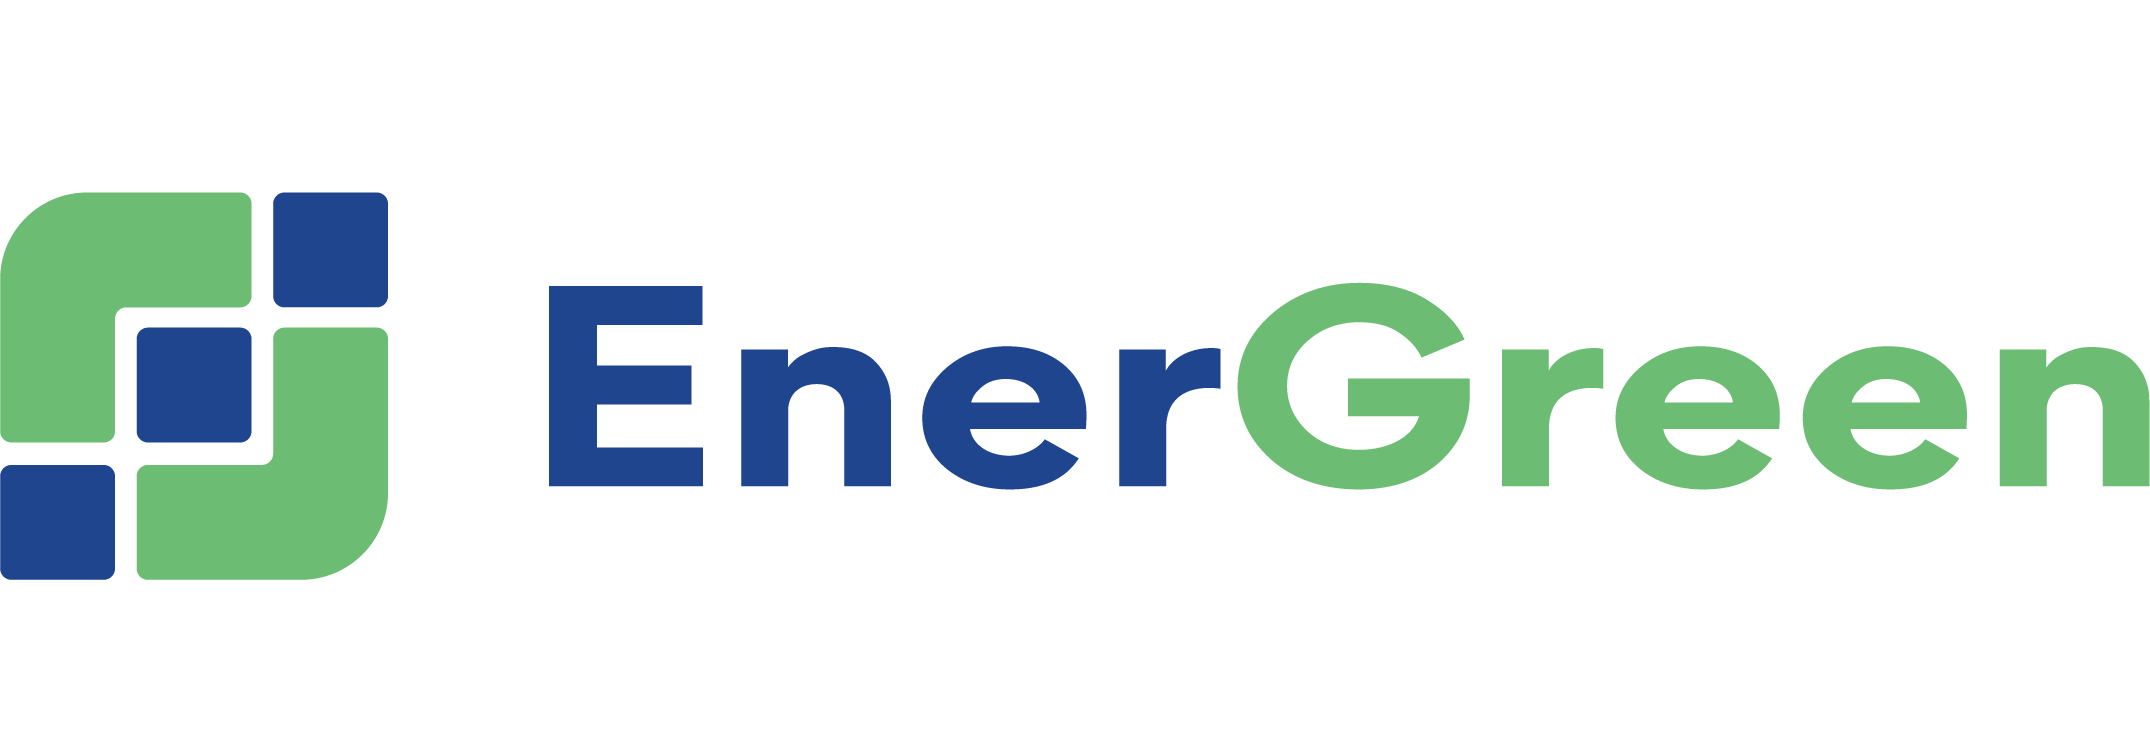 Ditrolic EnerGreen Logo